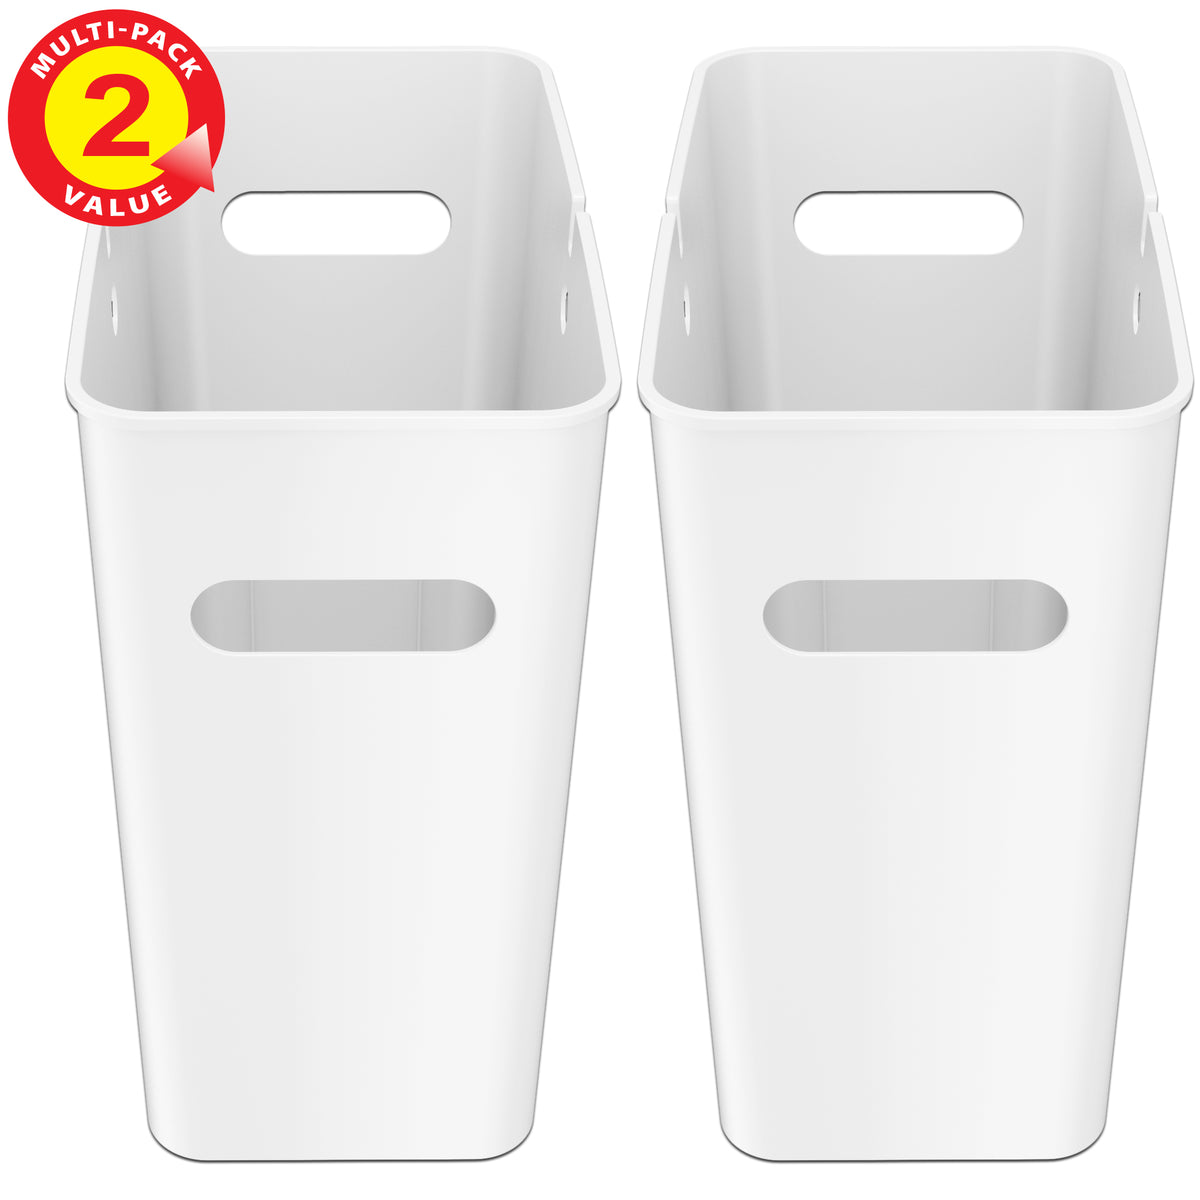 4.2 Gallon / 16 Liter SlimGiant Ivory White Wastebasket (2-Pack)